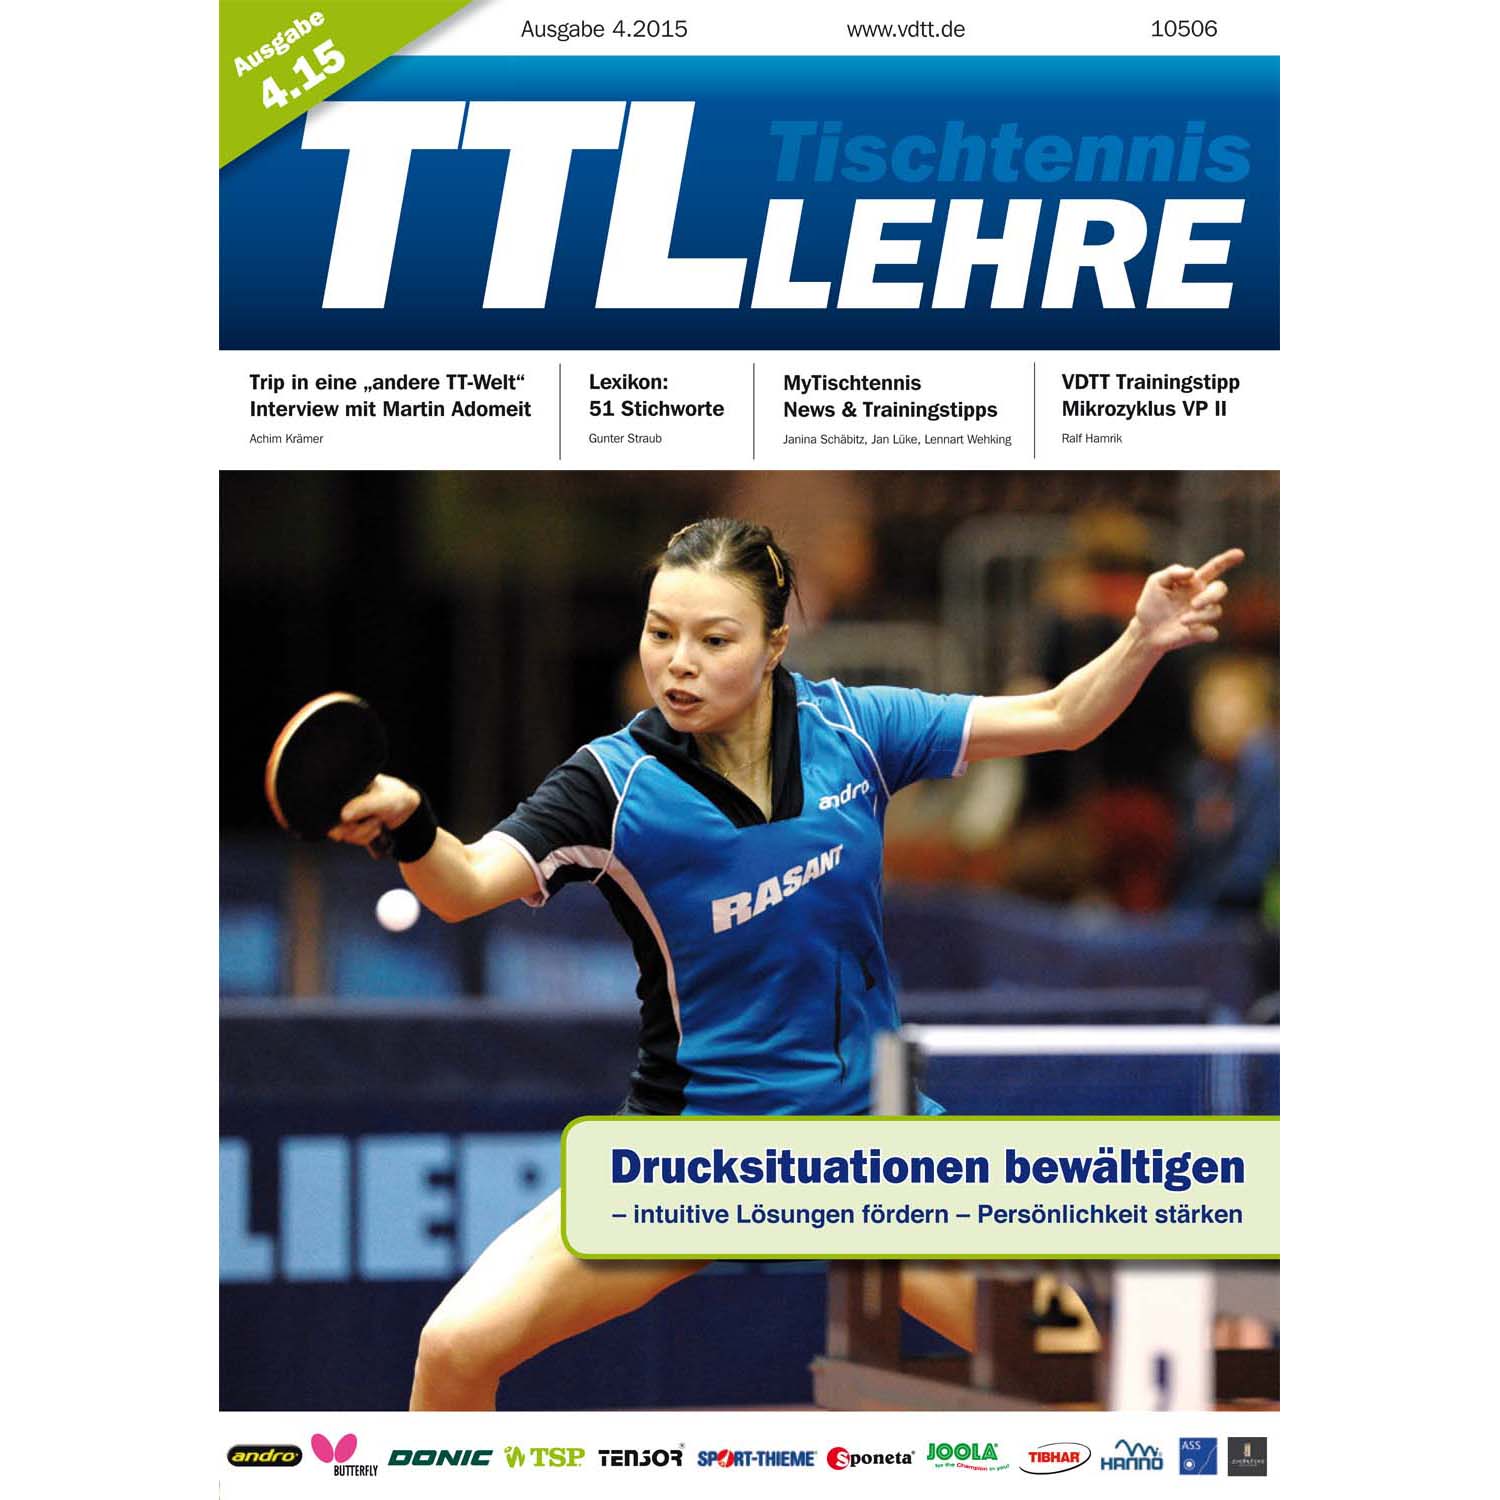 VDTT-Zeitschrift Tischtennislehre - Ausgabe: 2015-04